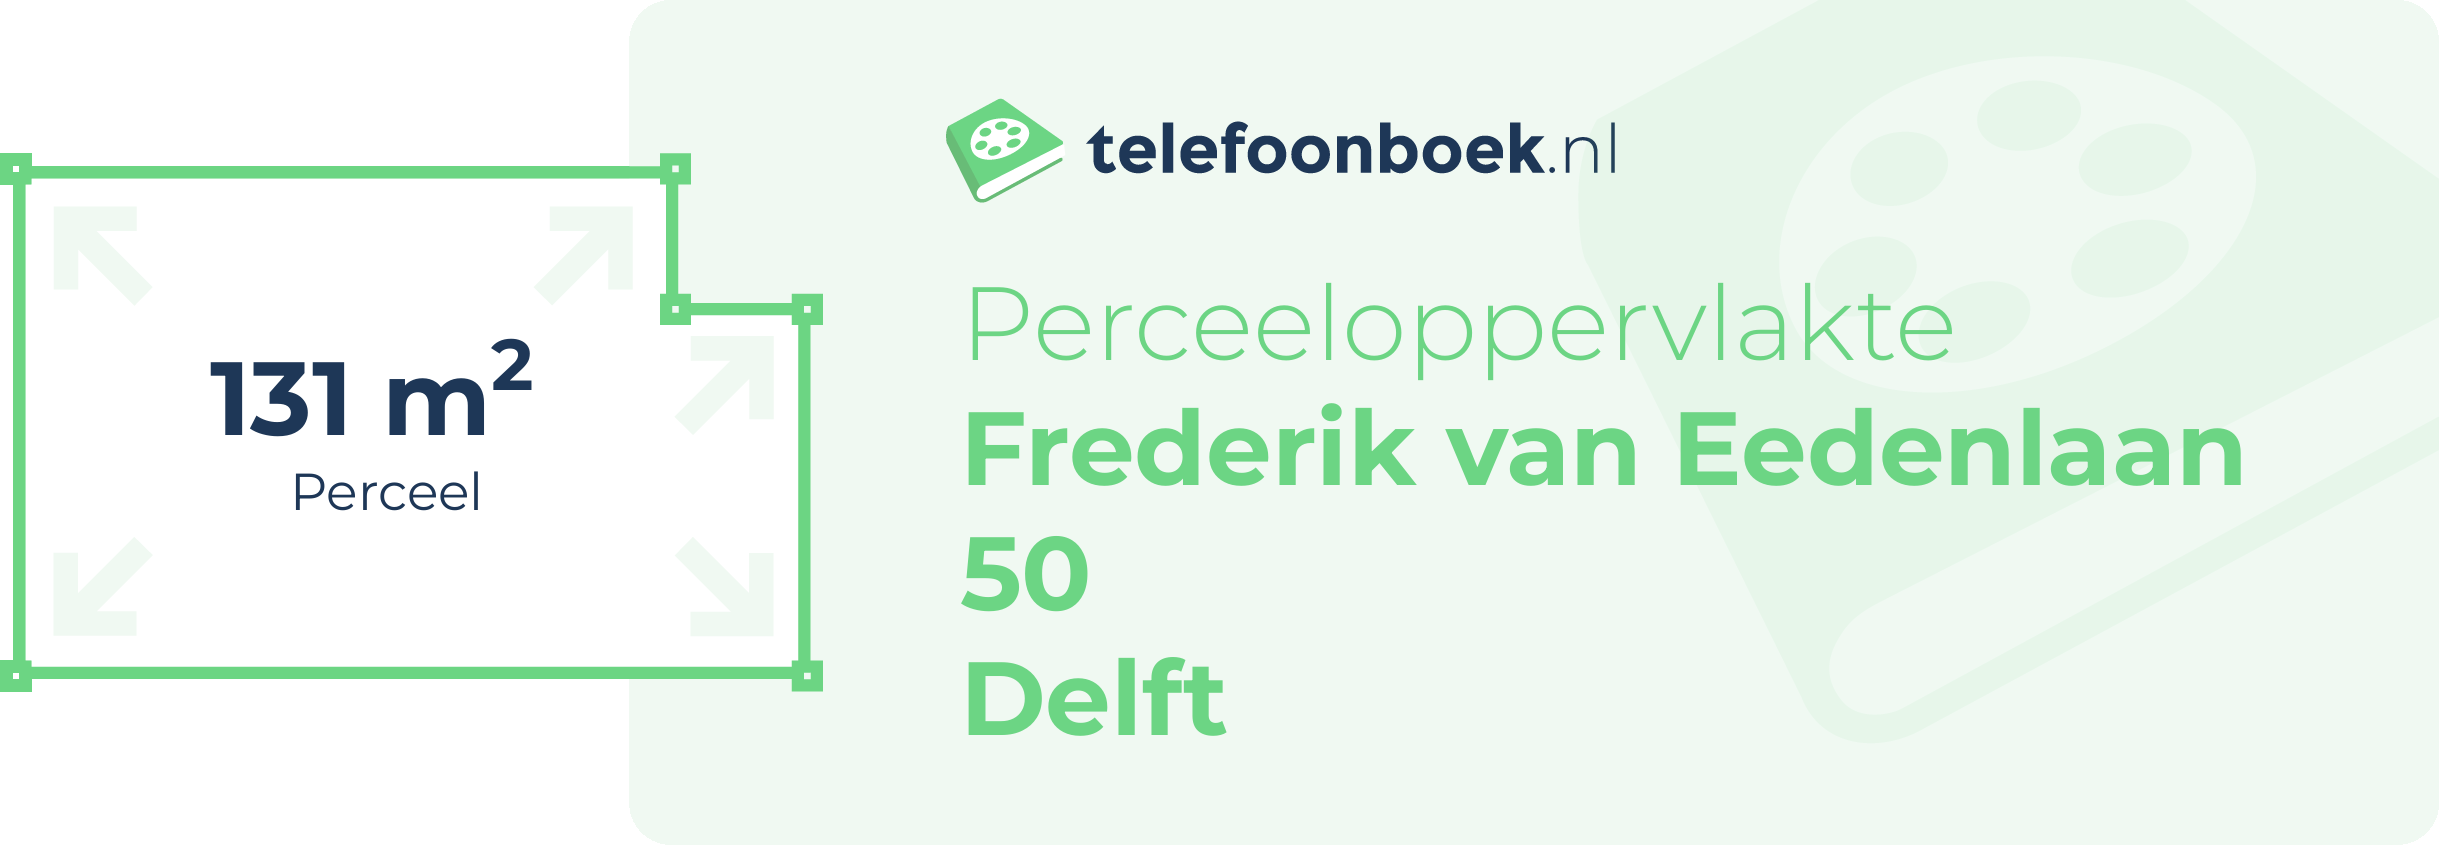 Perceeloppervlakte Frederik Van Eedenlaan 50 Delft